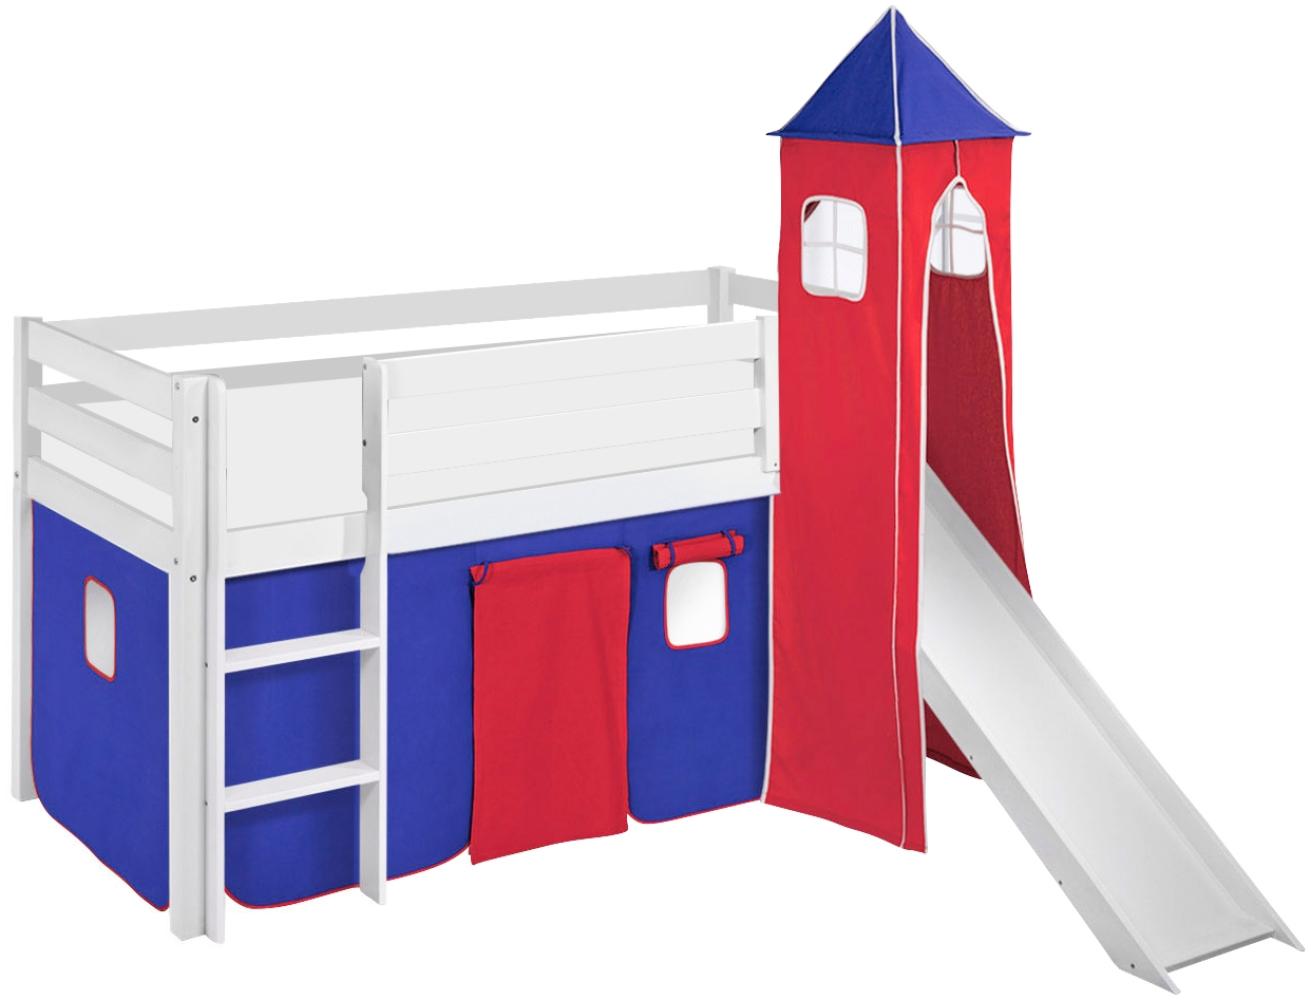 Lilokids 'Jelle' Spielbett 90 x 190 cm, Blau Rot, Kiefer massiv, mit Turm, Rutsche und Vorhang Bild 1